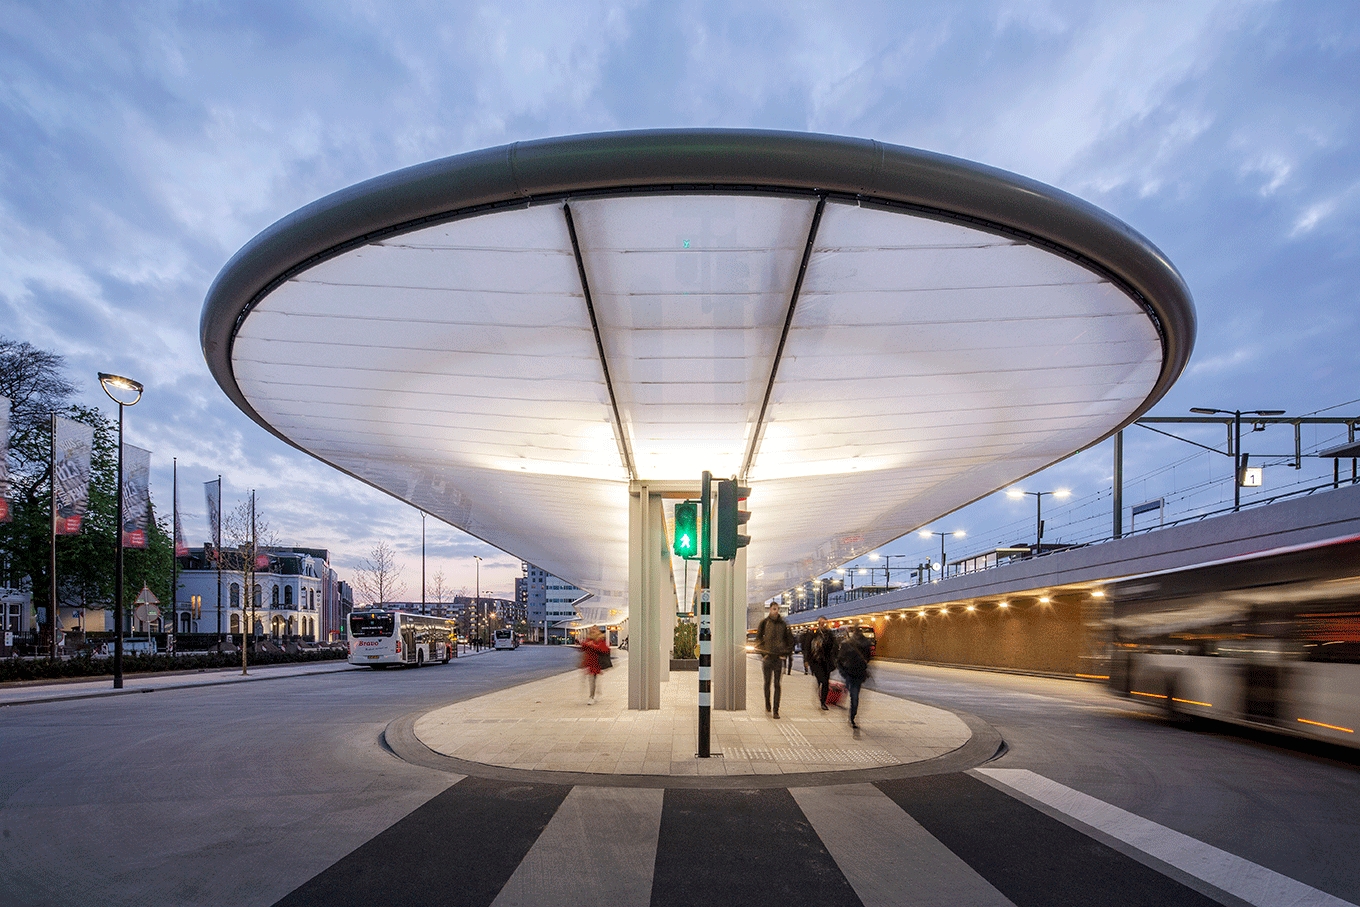 Κατασκευή στεγάστρου σε ενεργειακά αυτόνομο σταθμό λεωφορείων στην Ολλανδία